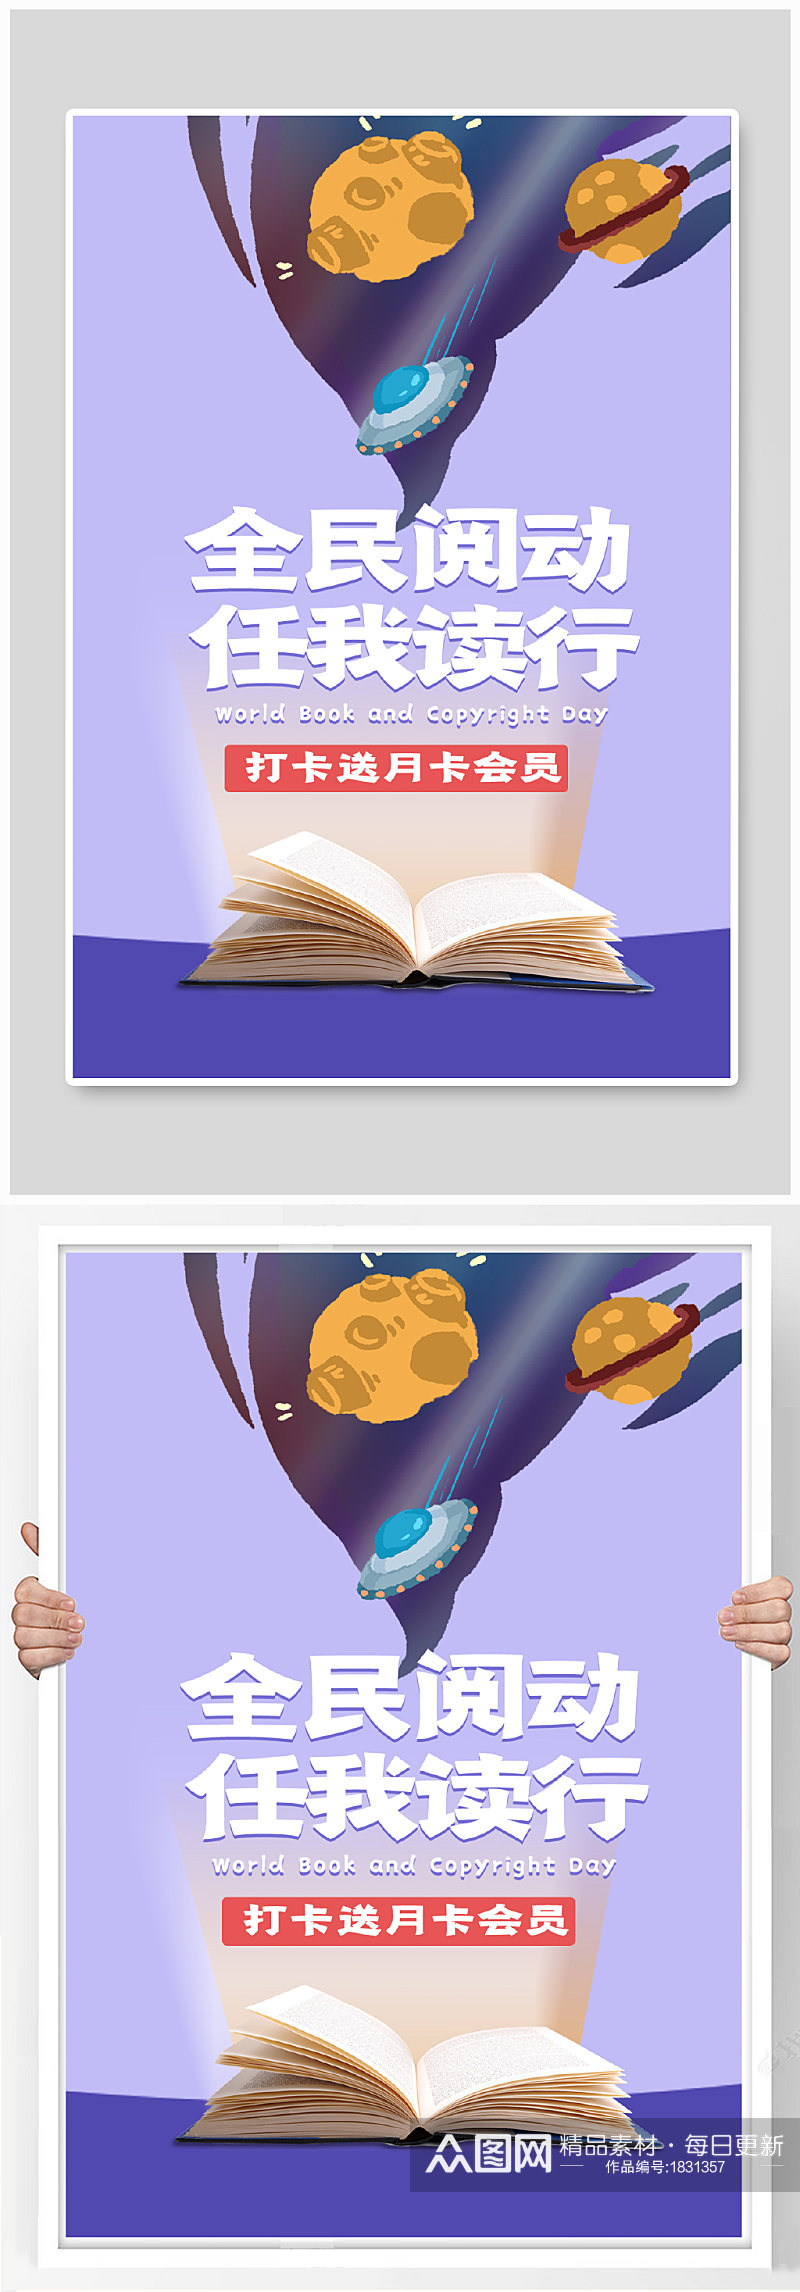 紫色天猫读书日图书书籍影像促销首页海报素材